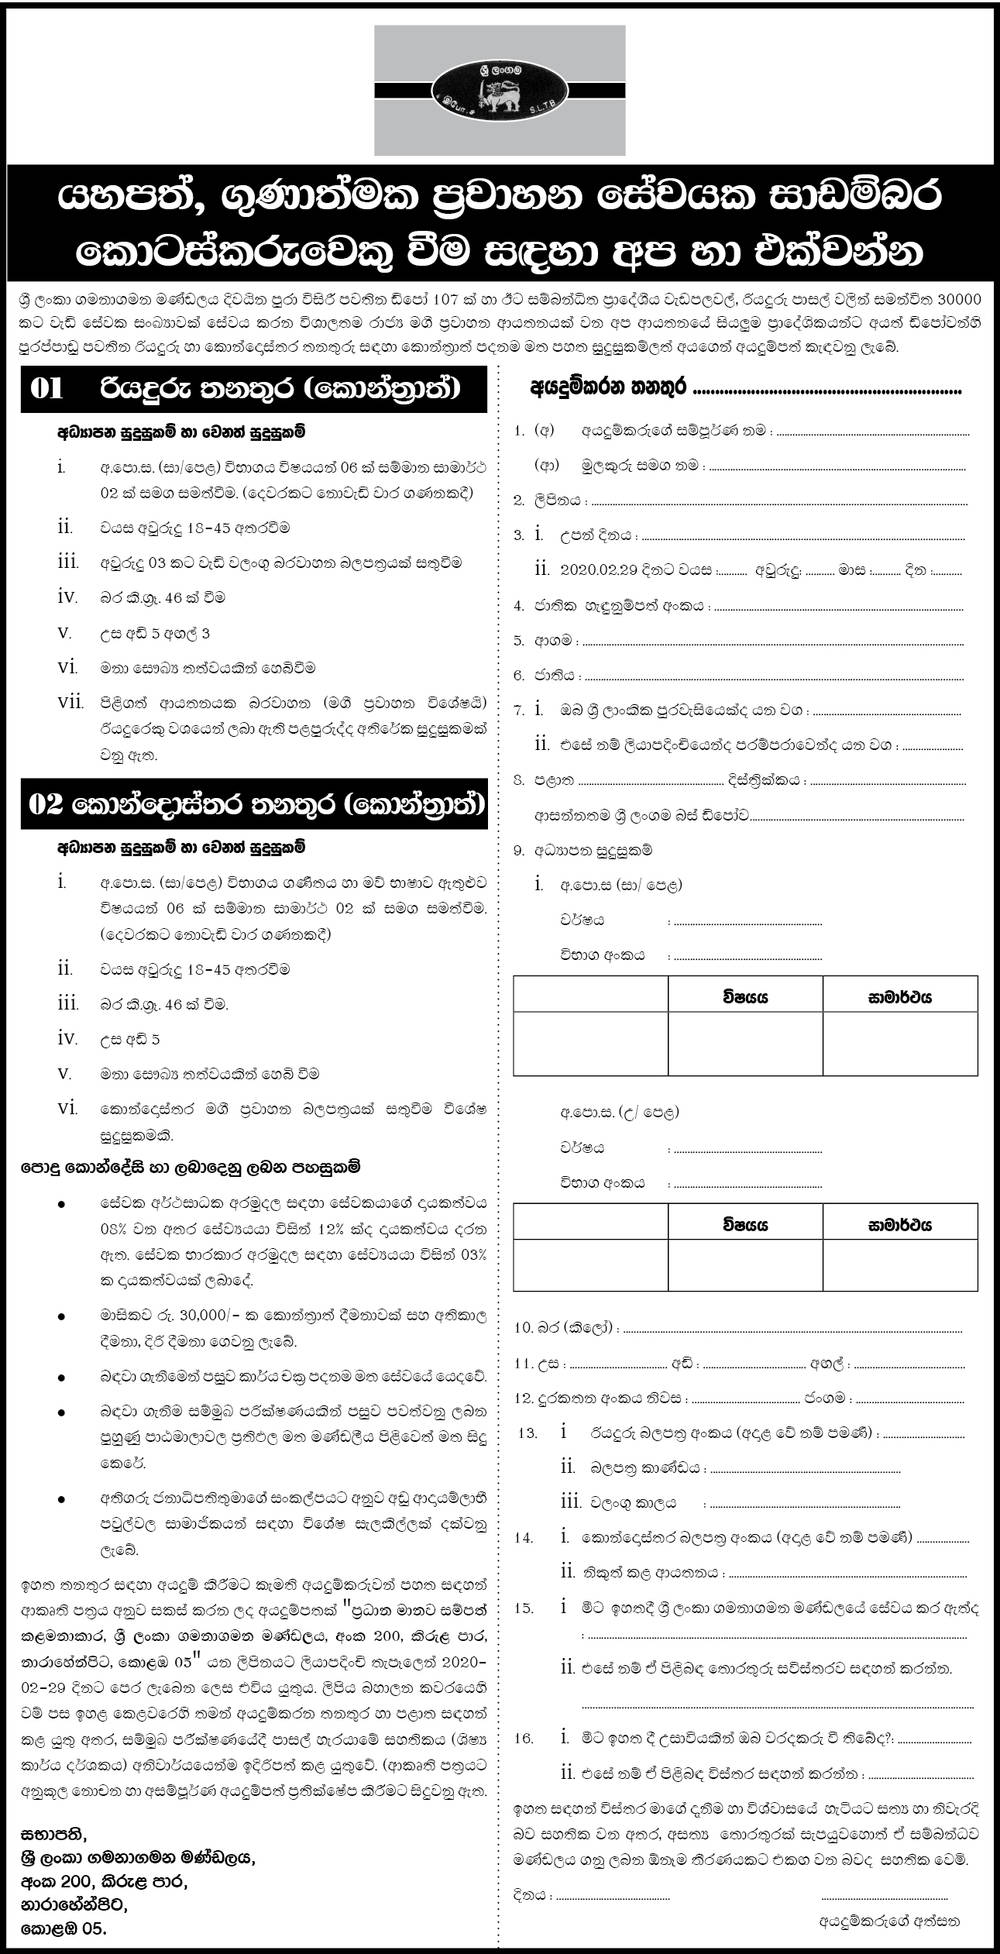 Sri Lanka Transport Board Job vacancies 2020 